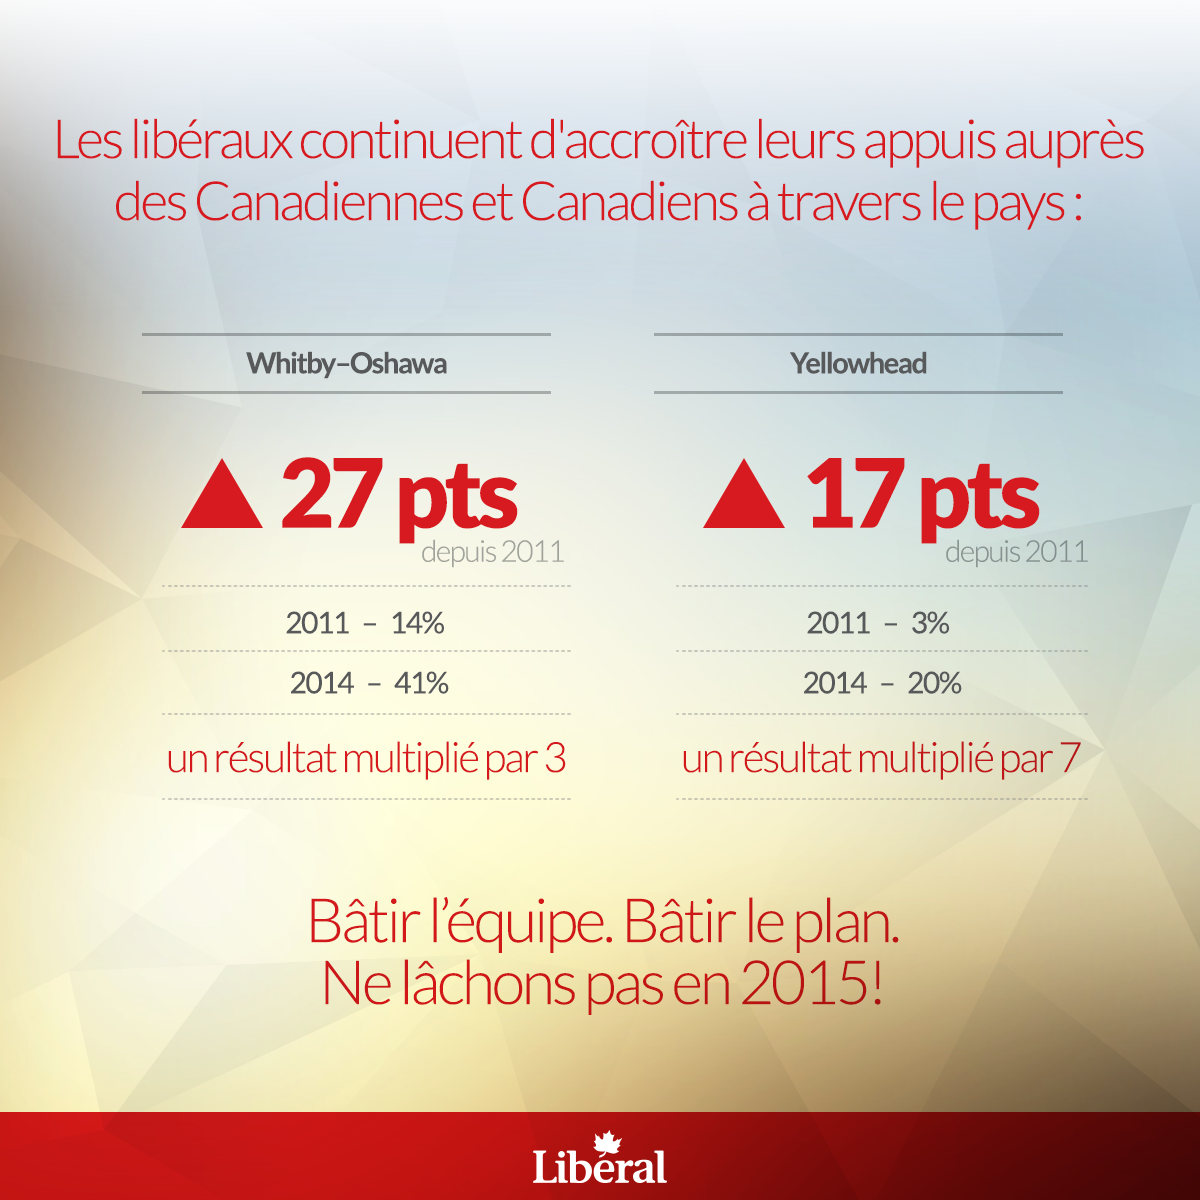 Les libéraux continuent d'accroître leurs appuis auprès des Canadiennes et Canadiens à travers le pays: Whitby-Oshawa en hausse 27 points depuis 2011. 2011 - 14%. 2014 - 41%. un résultat multiplié par 3. Yellowhead en hausse 17 points depuis 2011. 2011 - 3%. 2014 - 2014 - 20%. un résultat multiplié par 7. Bâtir l'équipe. Bâtir le plan. Ne lâchons pas en 2015!